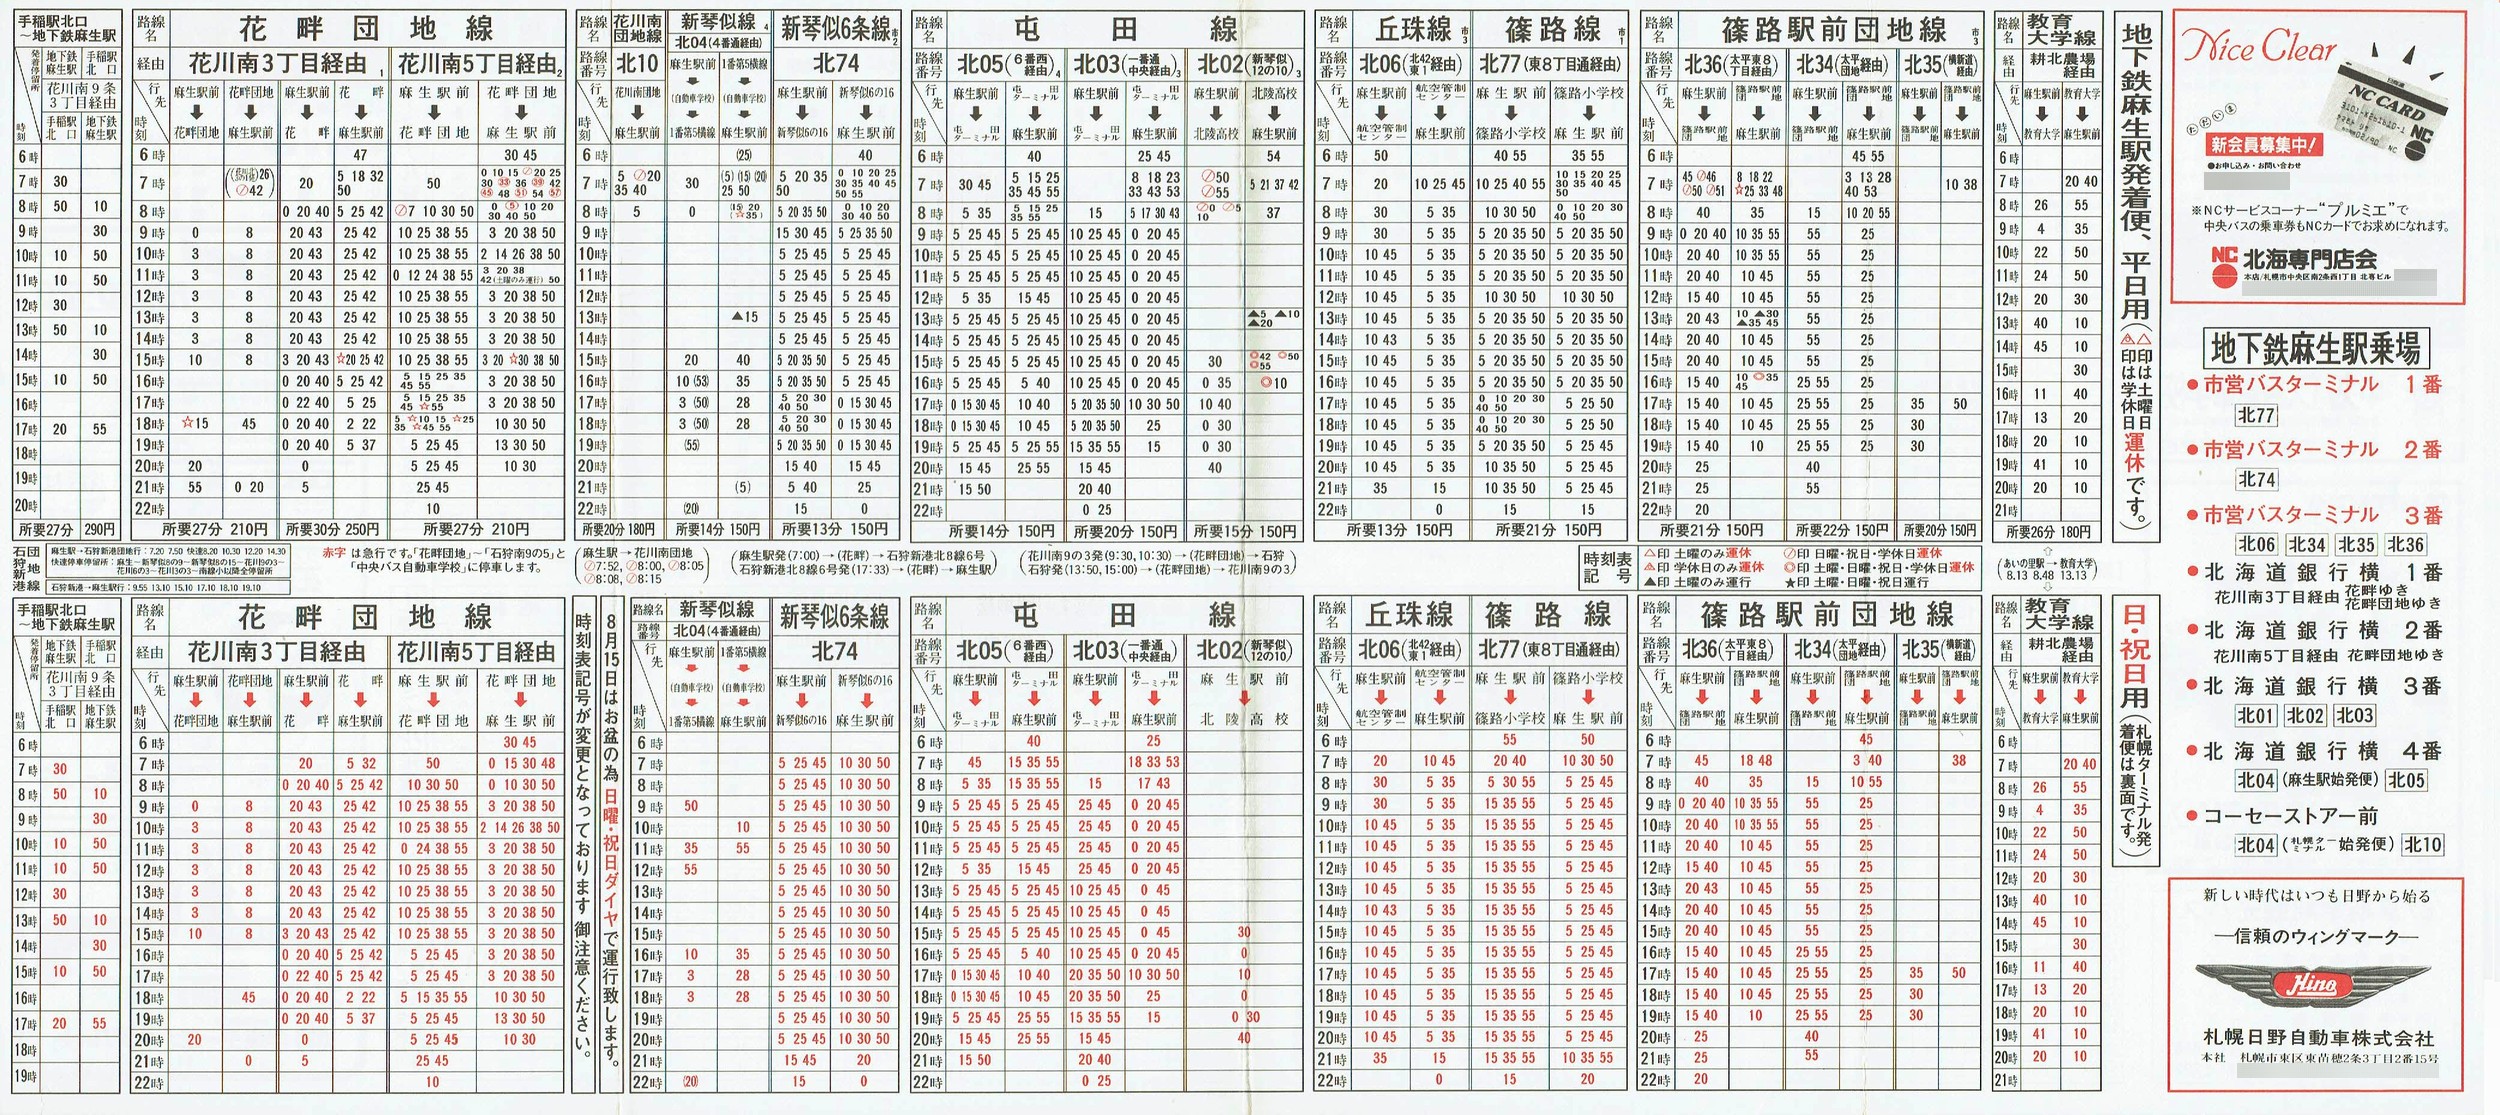 1987-04-10改正_北海道中央バス(札幌)_札幌市内線北方面時刻表裏面